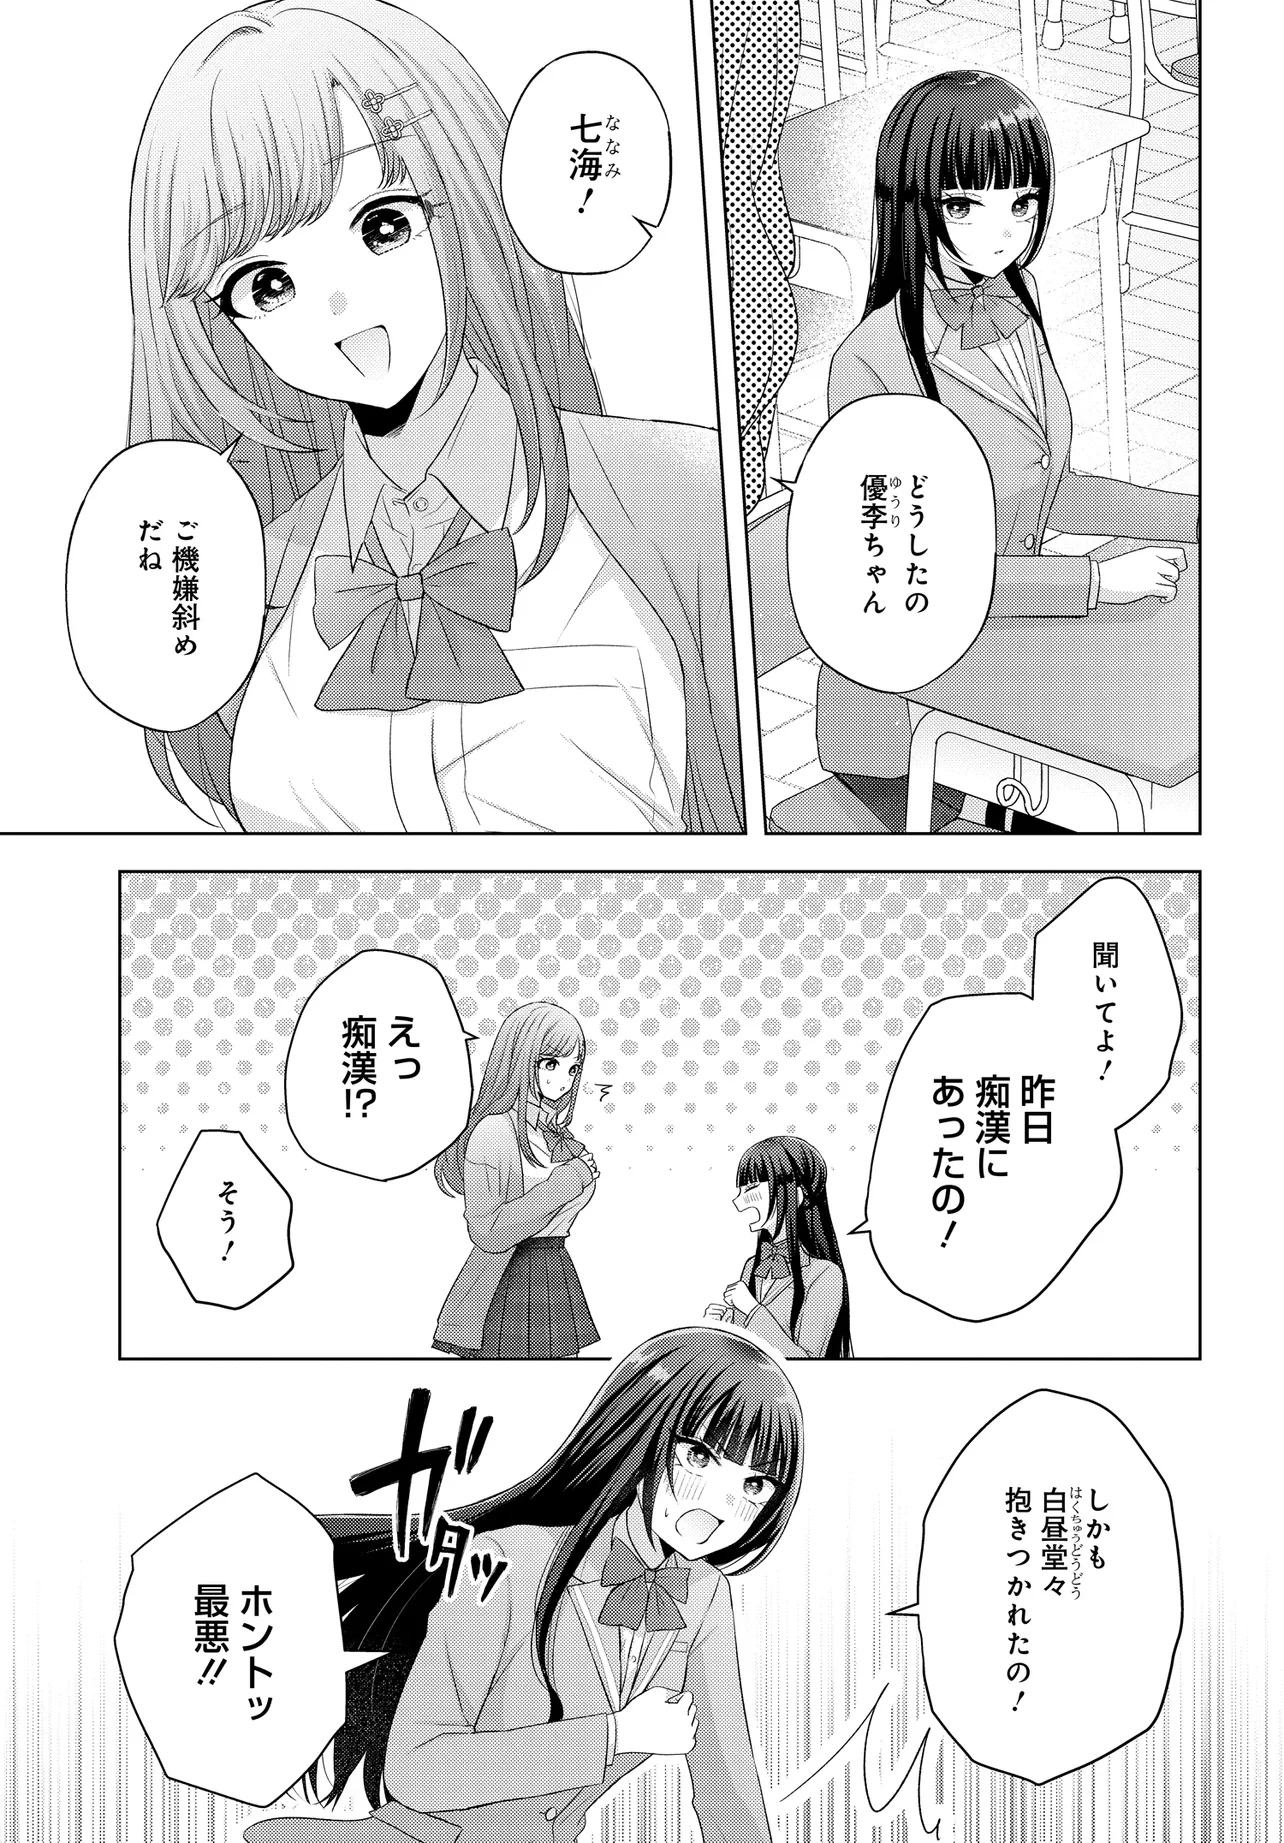 Suufun Go no Mirai ga Wakaru you ni Natta kedo, Onnagokoro wa Wakaranai. - Chapter 1 - Page 41